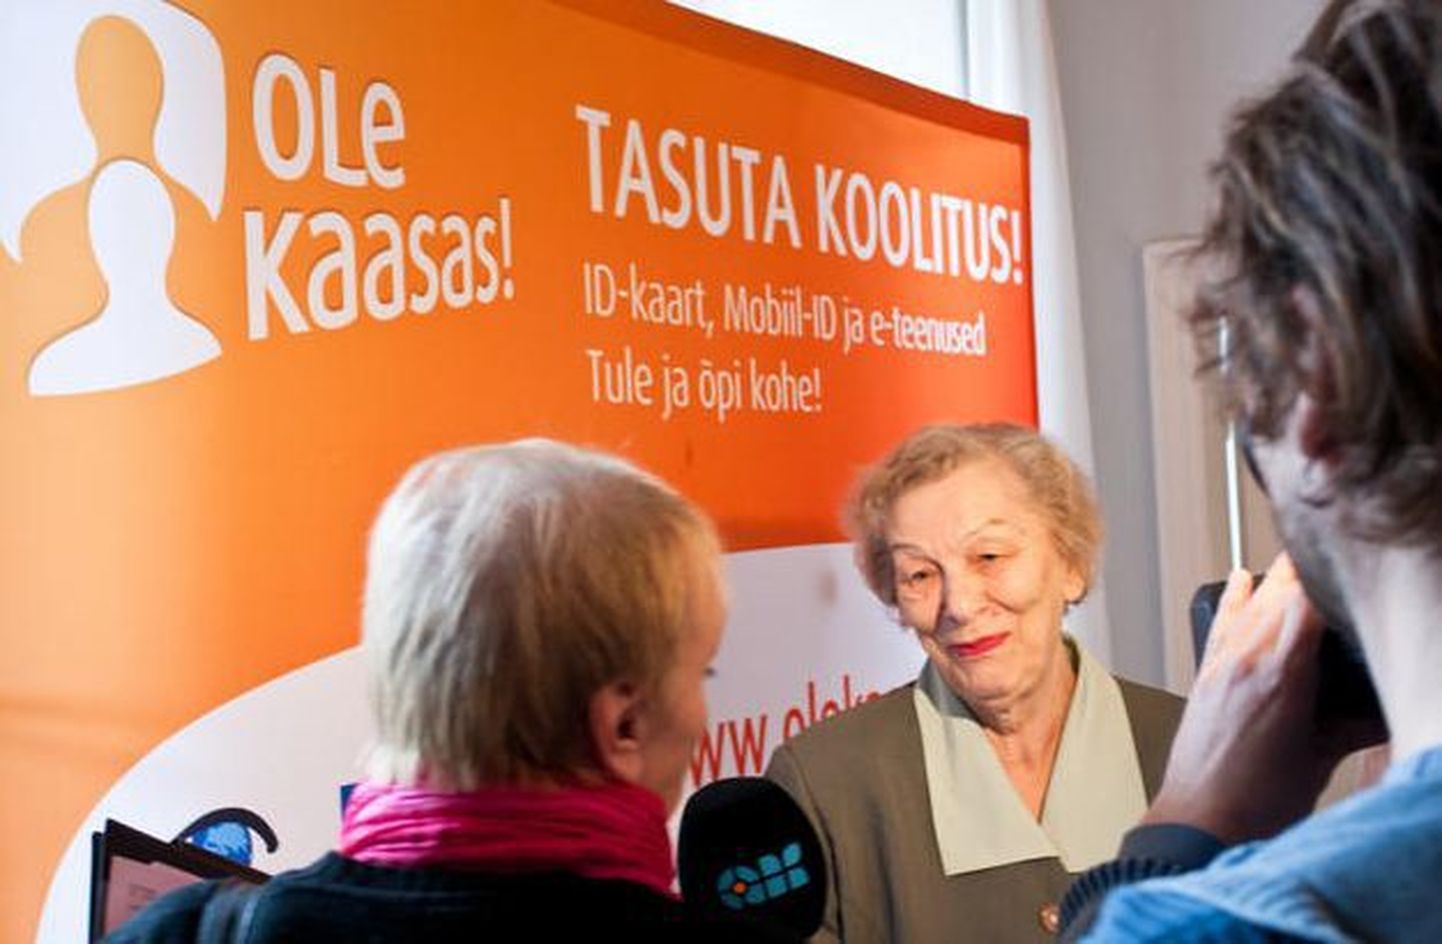 77-aastane Eve-Mall Peets räägib ajakirjanikele koolitusprojektis «Ole Kaasas!» osalemisest.